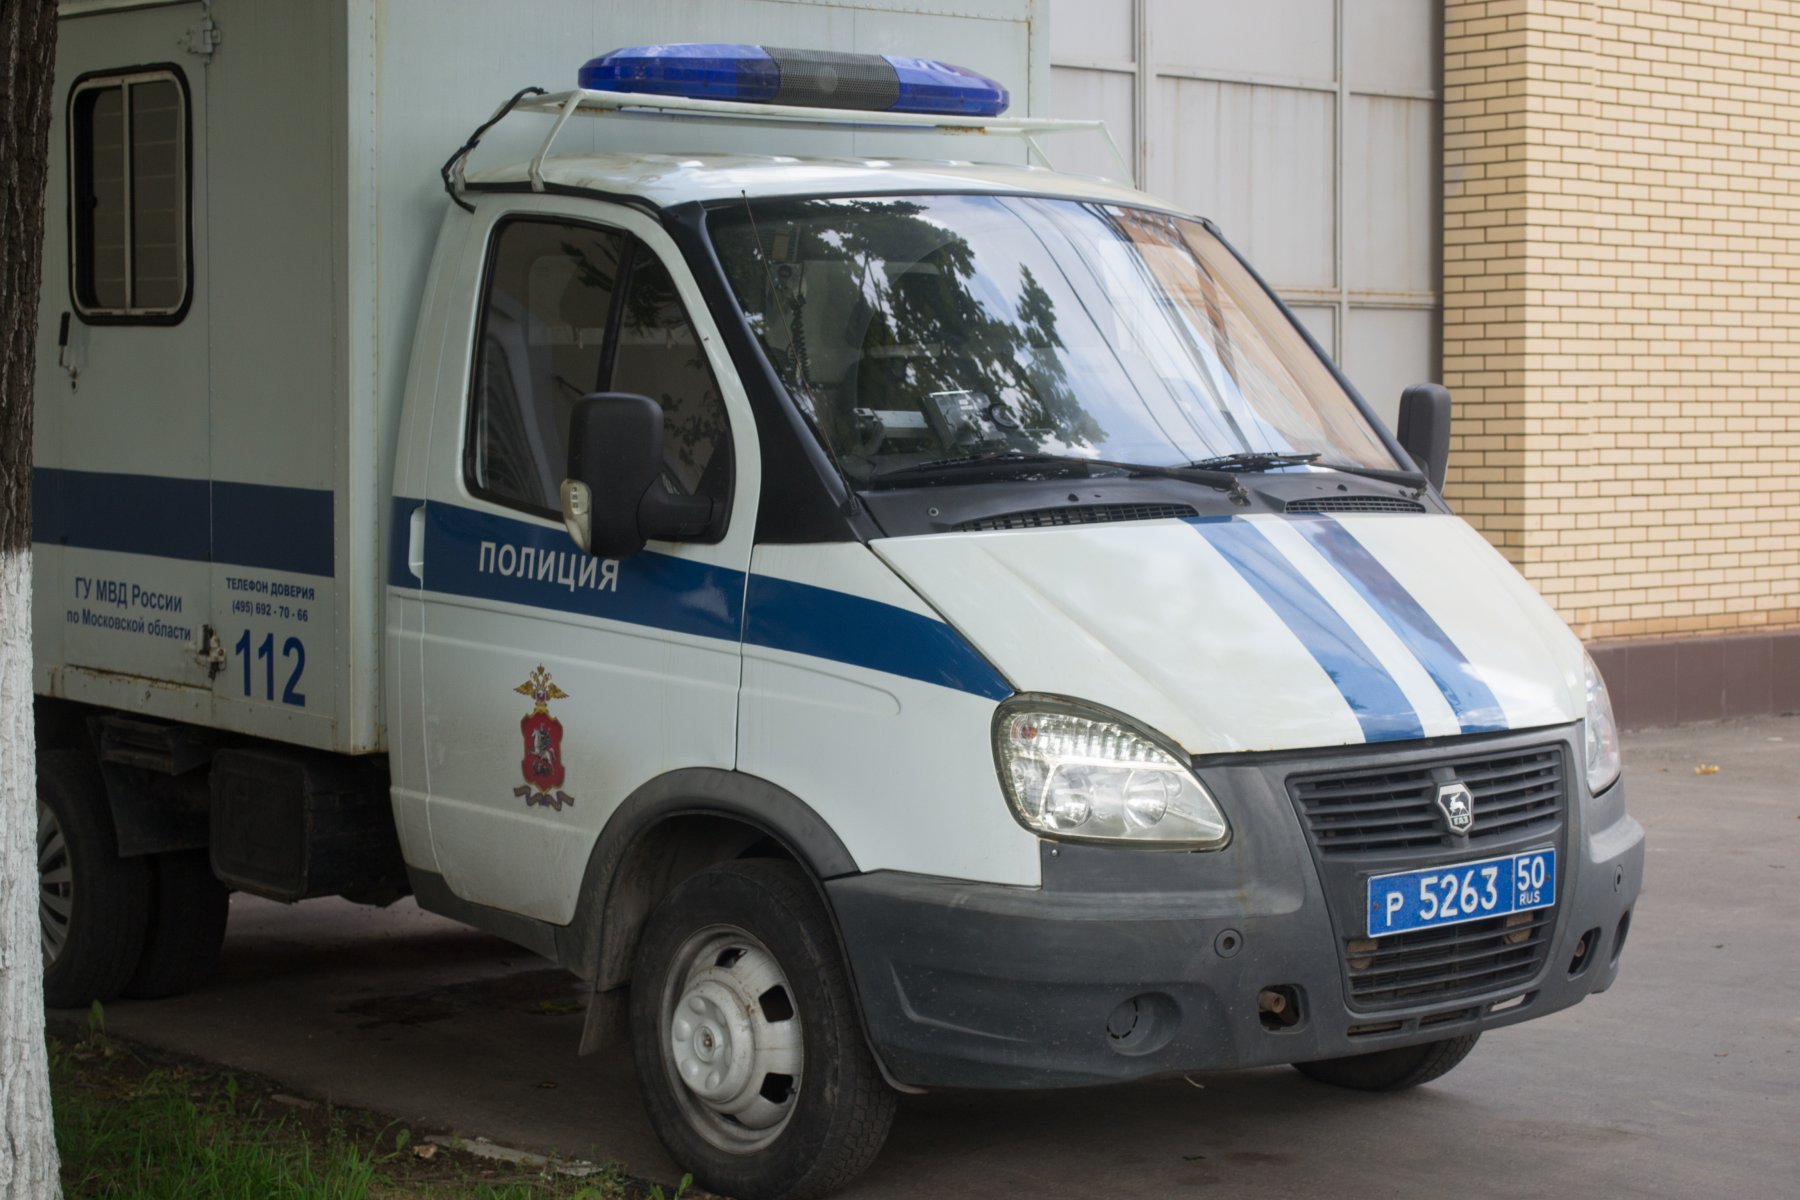 В Красногорске рабочие украли со стройки материалы на 365 тысяч рублей